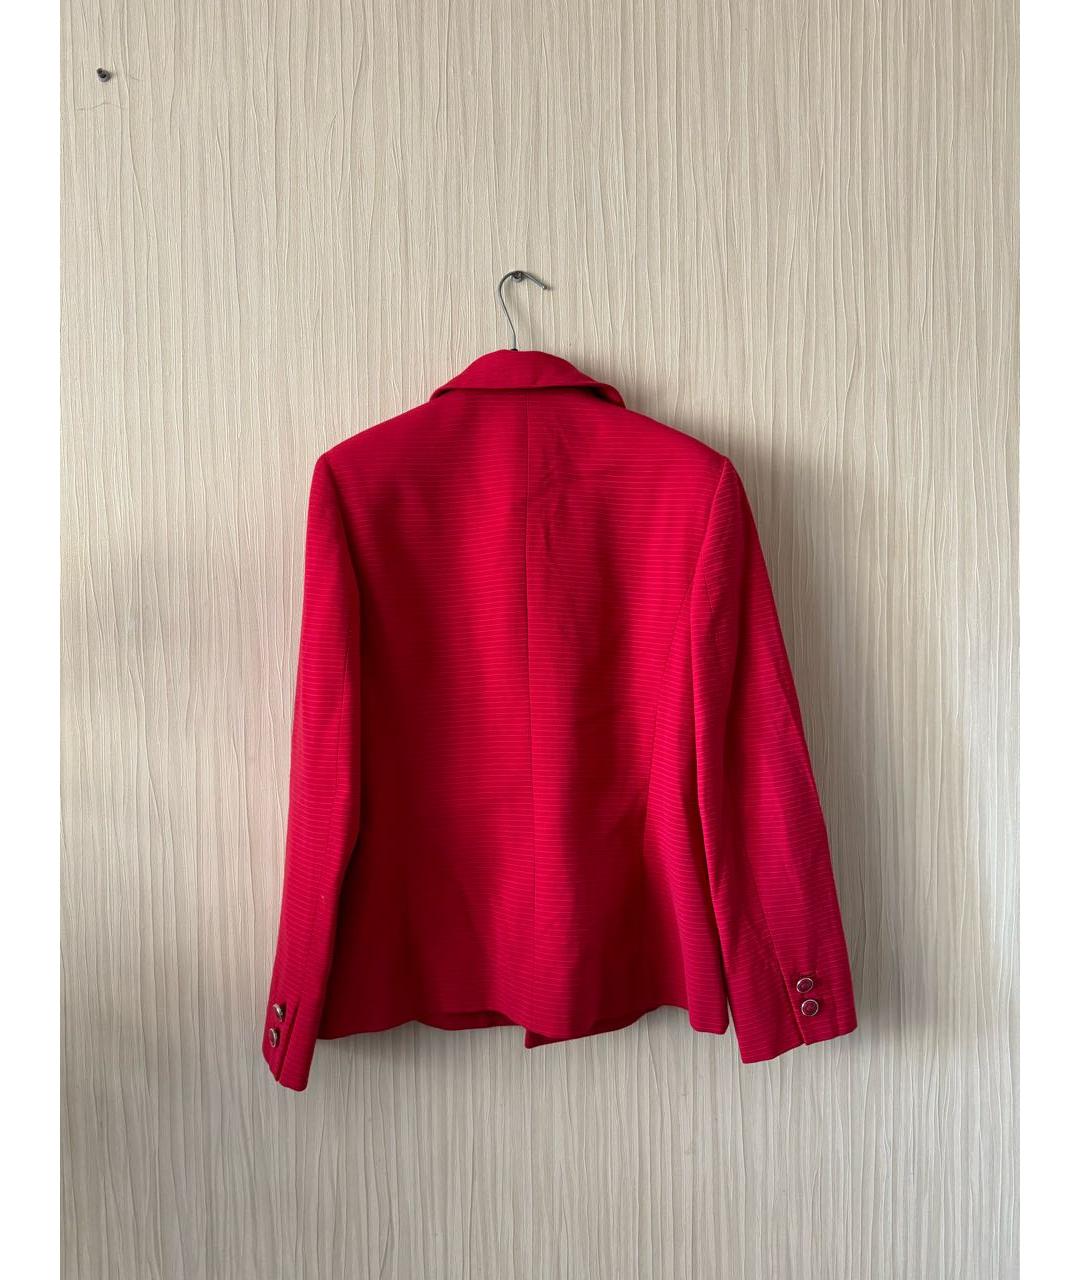 VERSUS VERSACE Красный шерстяной жакет/пиджак, фото 2